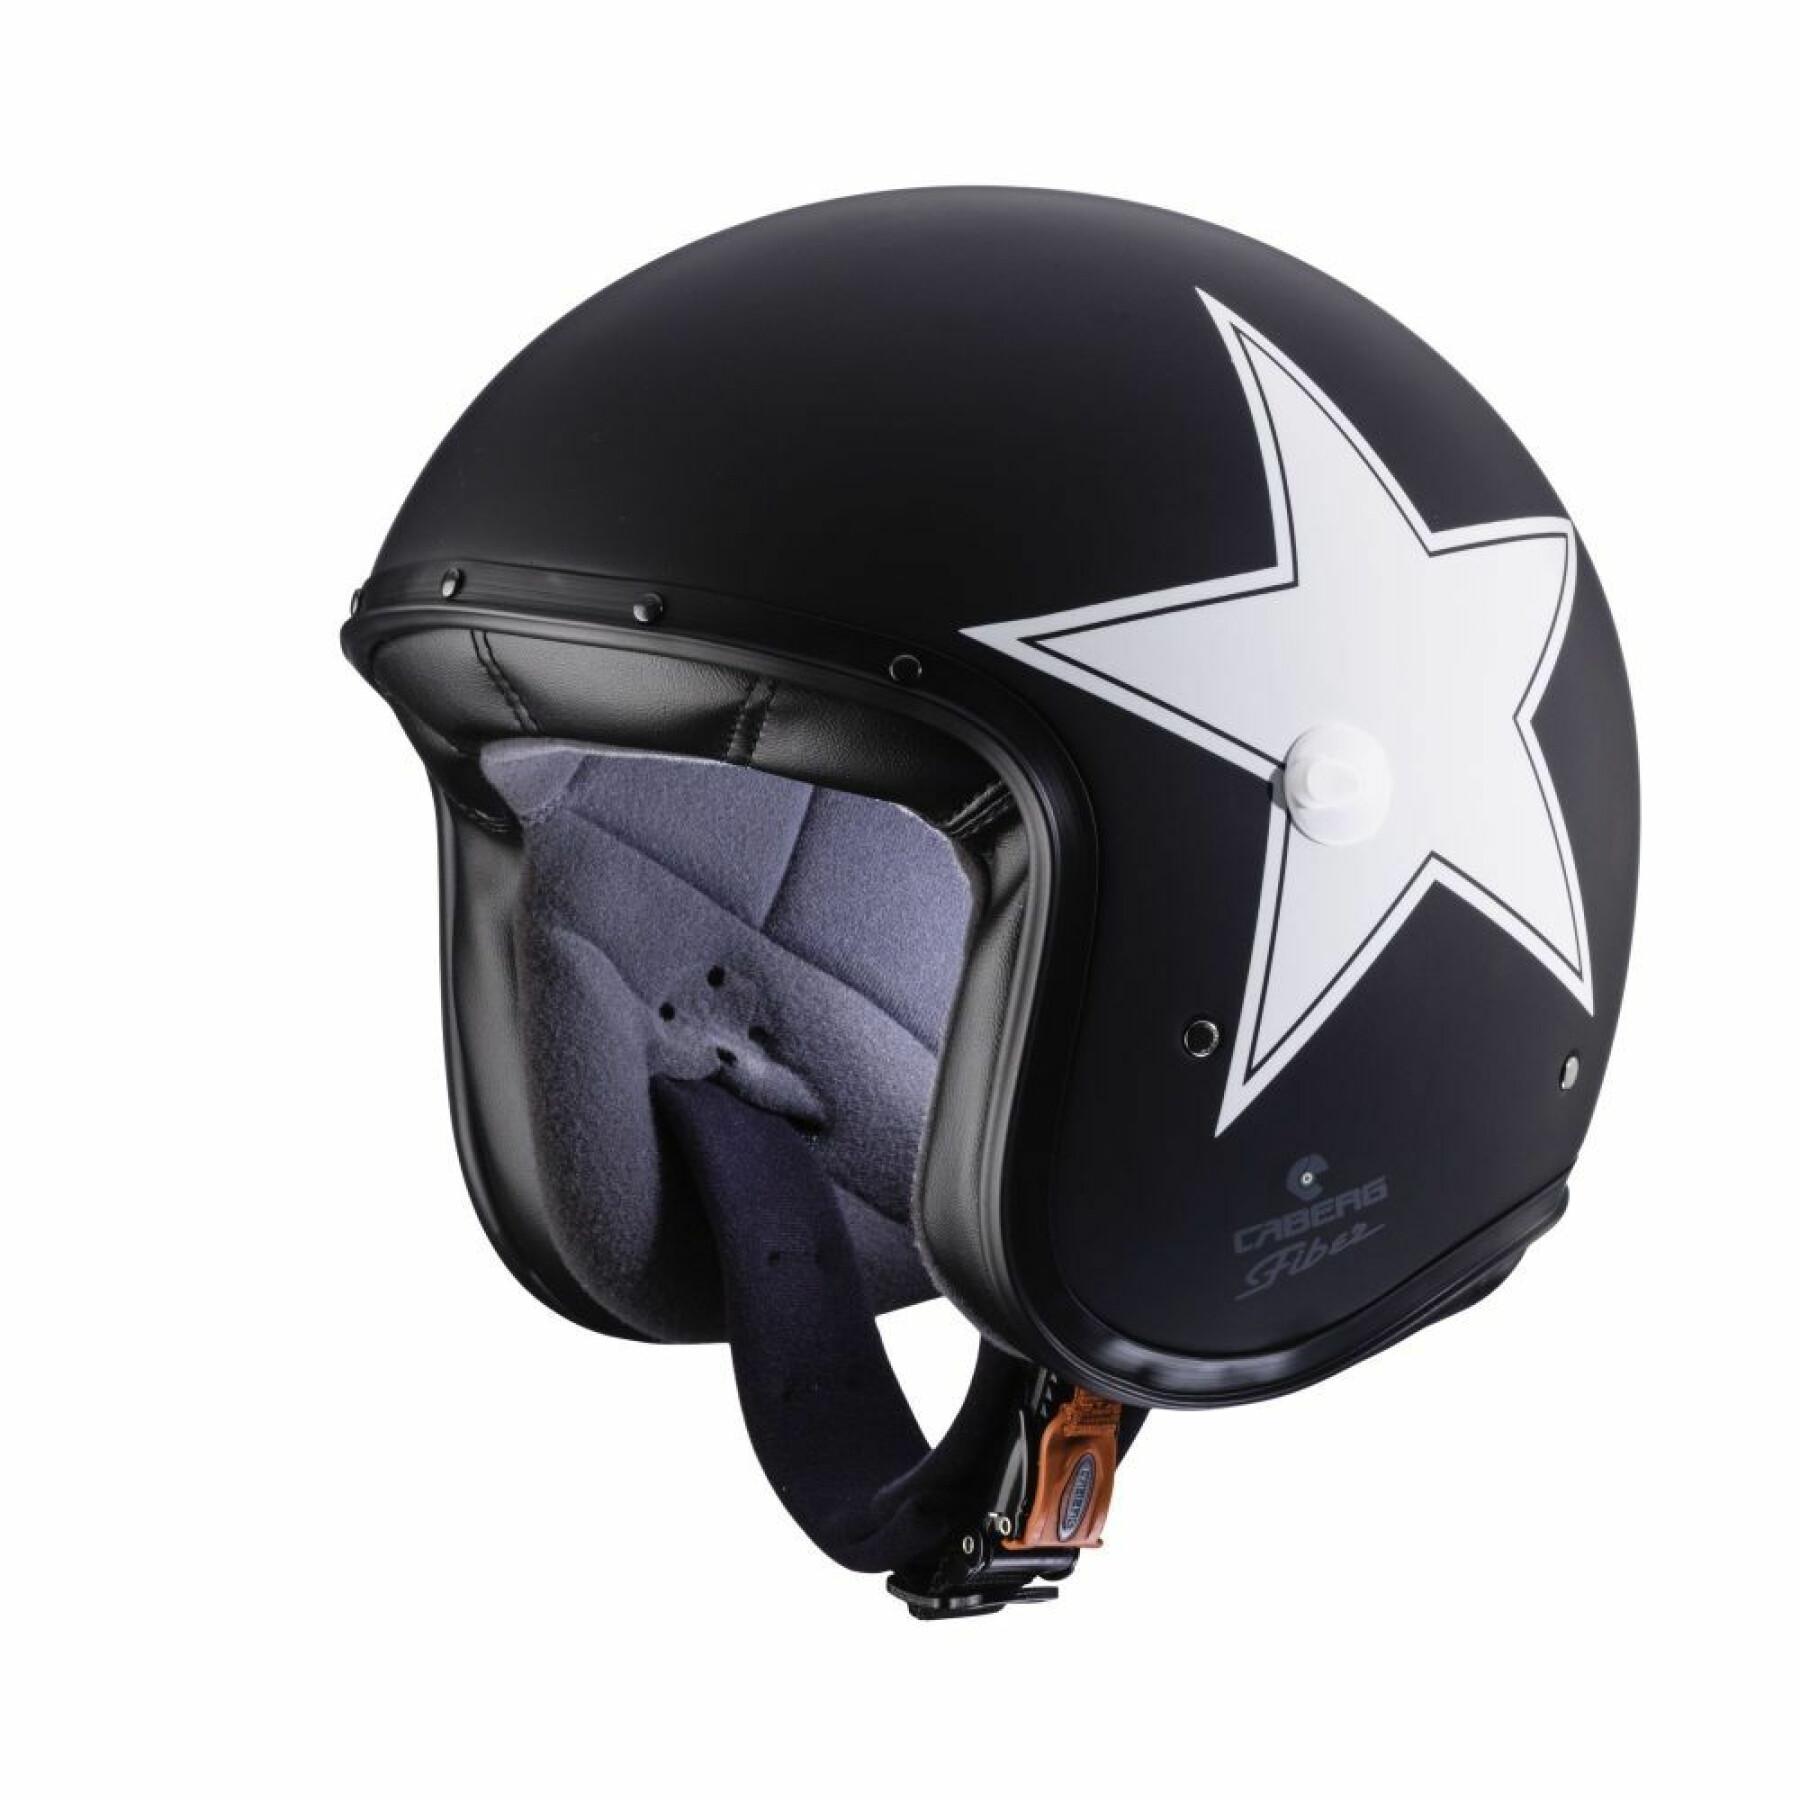 Jet motorcycle helmet Caberg freeride star